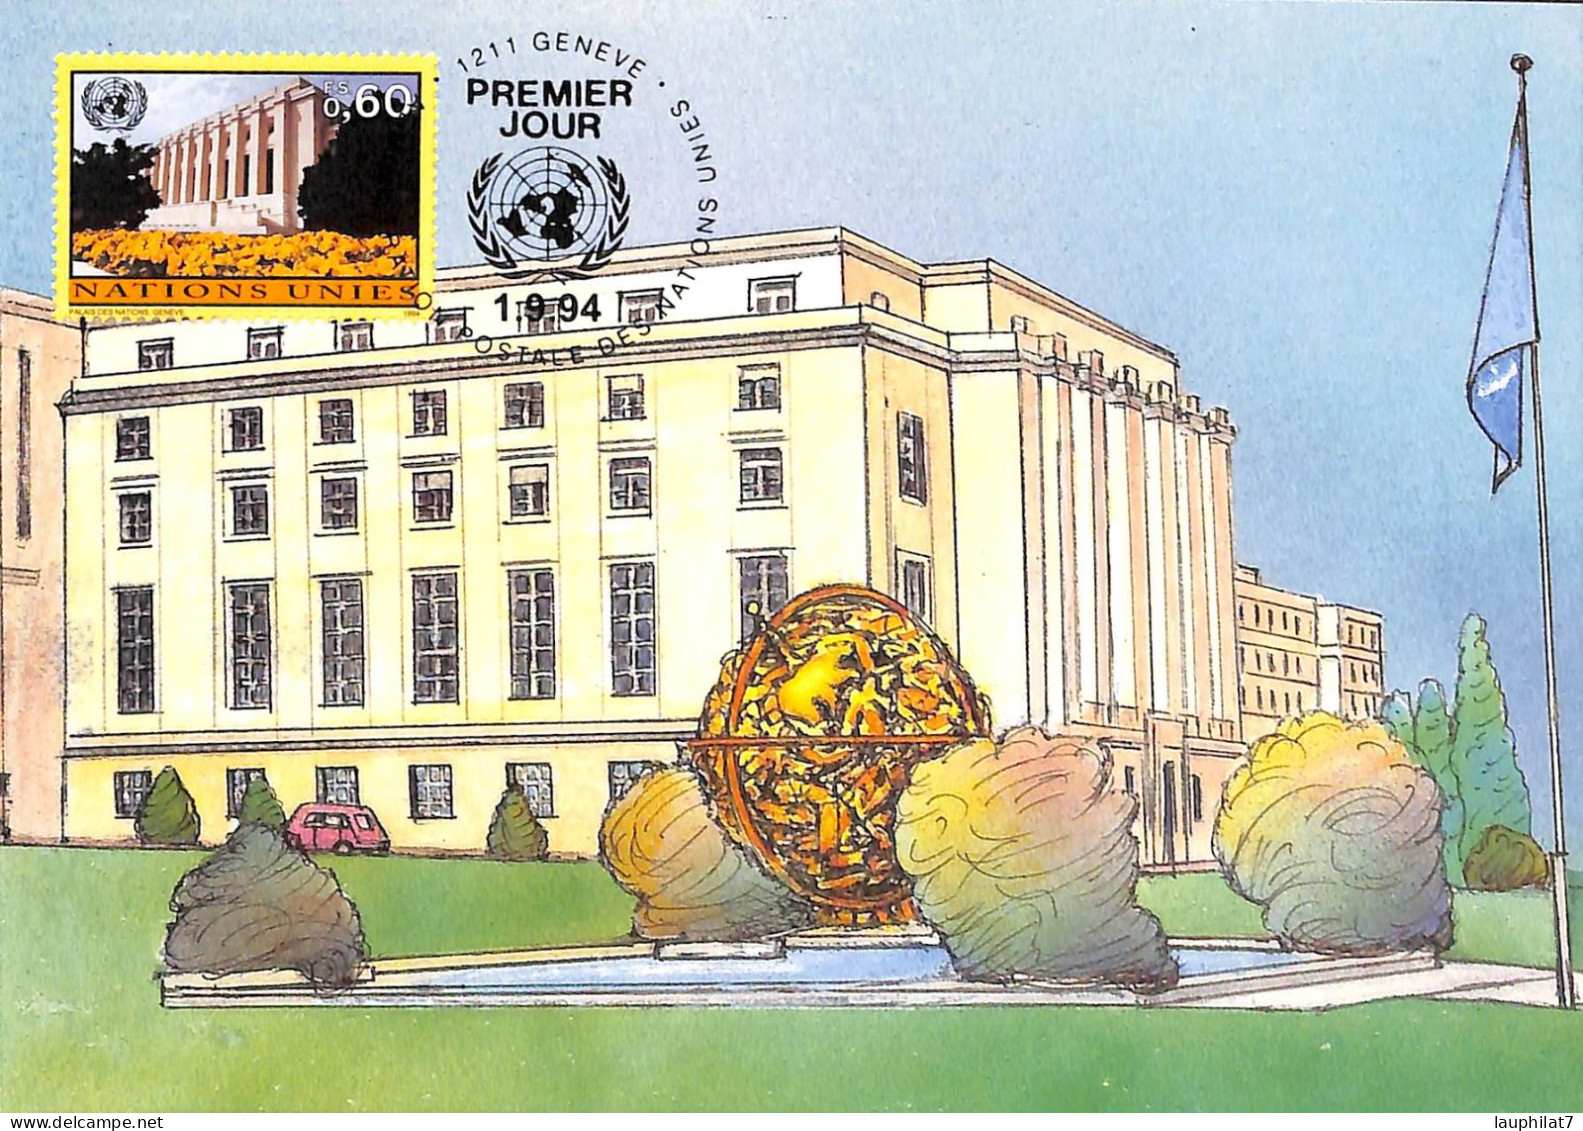 [500279]B/TB//-Nations Unies 1994 - 1211 GENEVE, Onu, Monument - Cartes-maximum